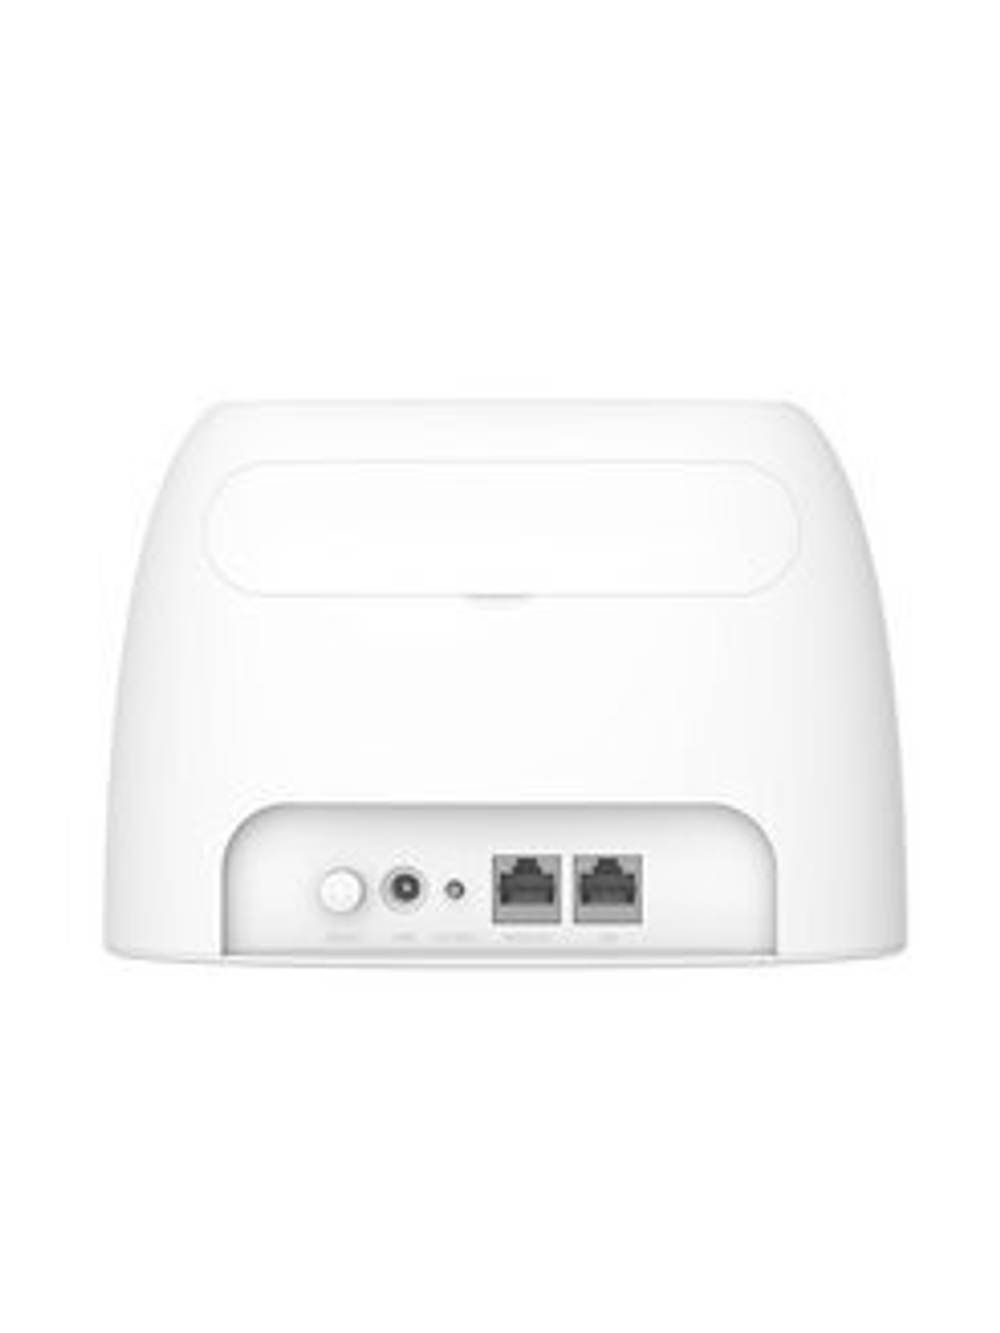 Wi-Fi роутер Tenda 4G03